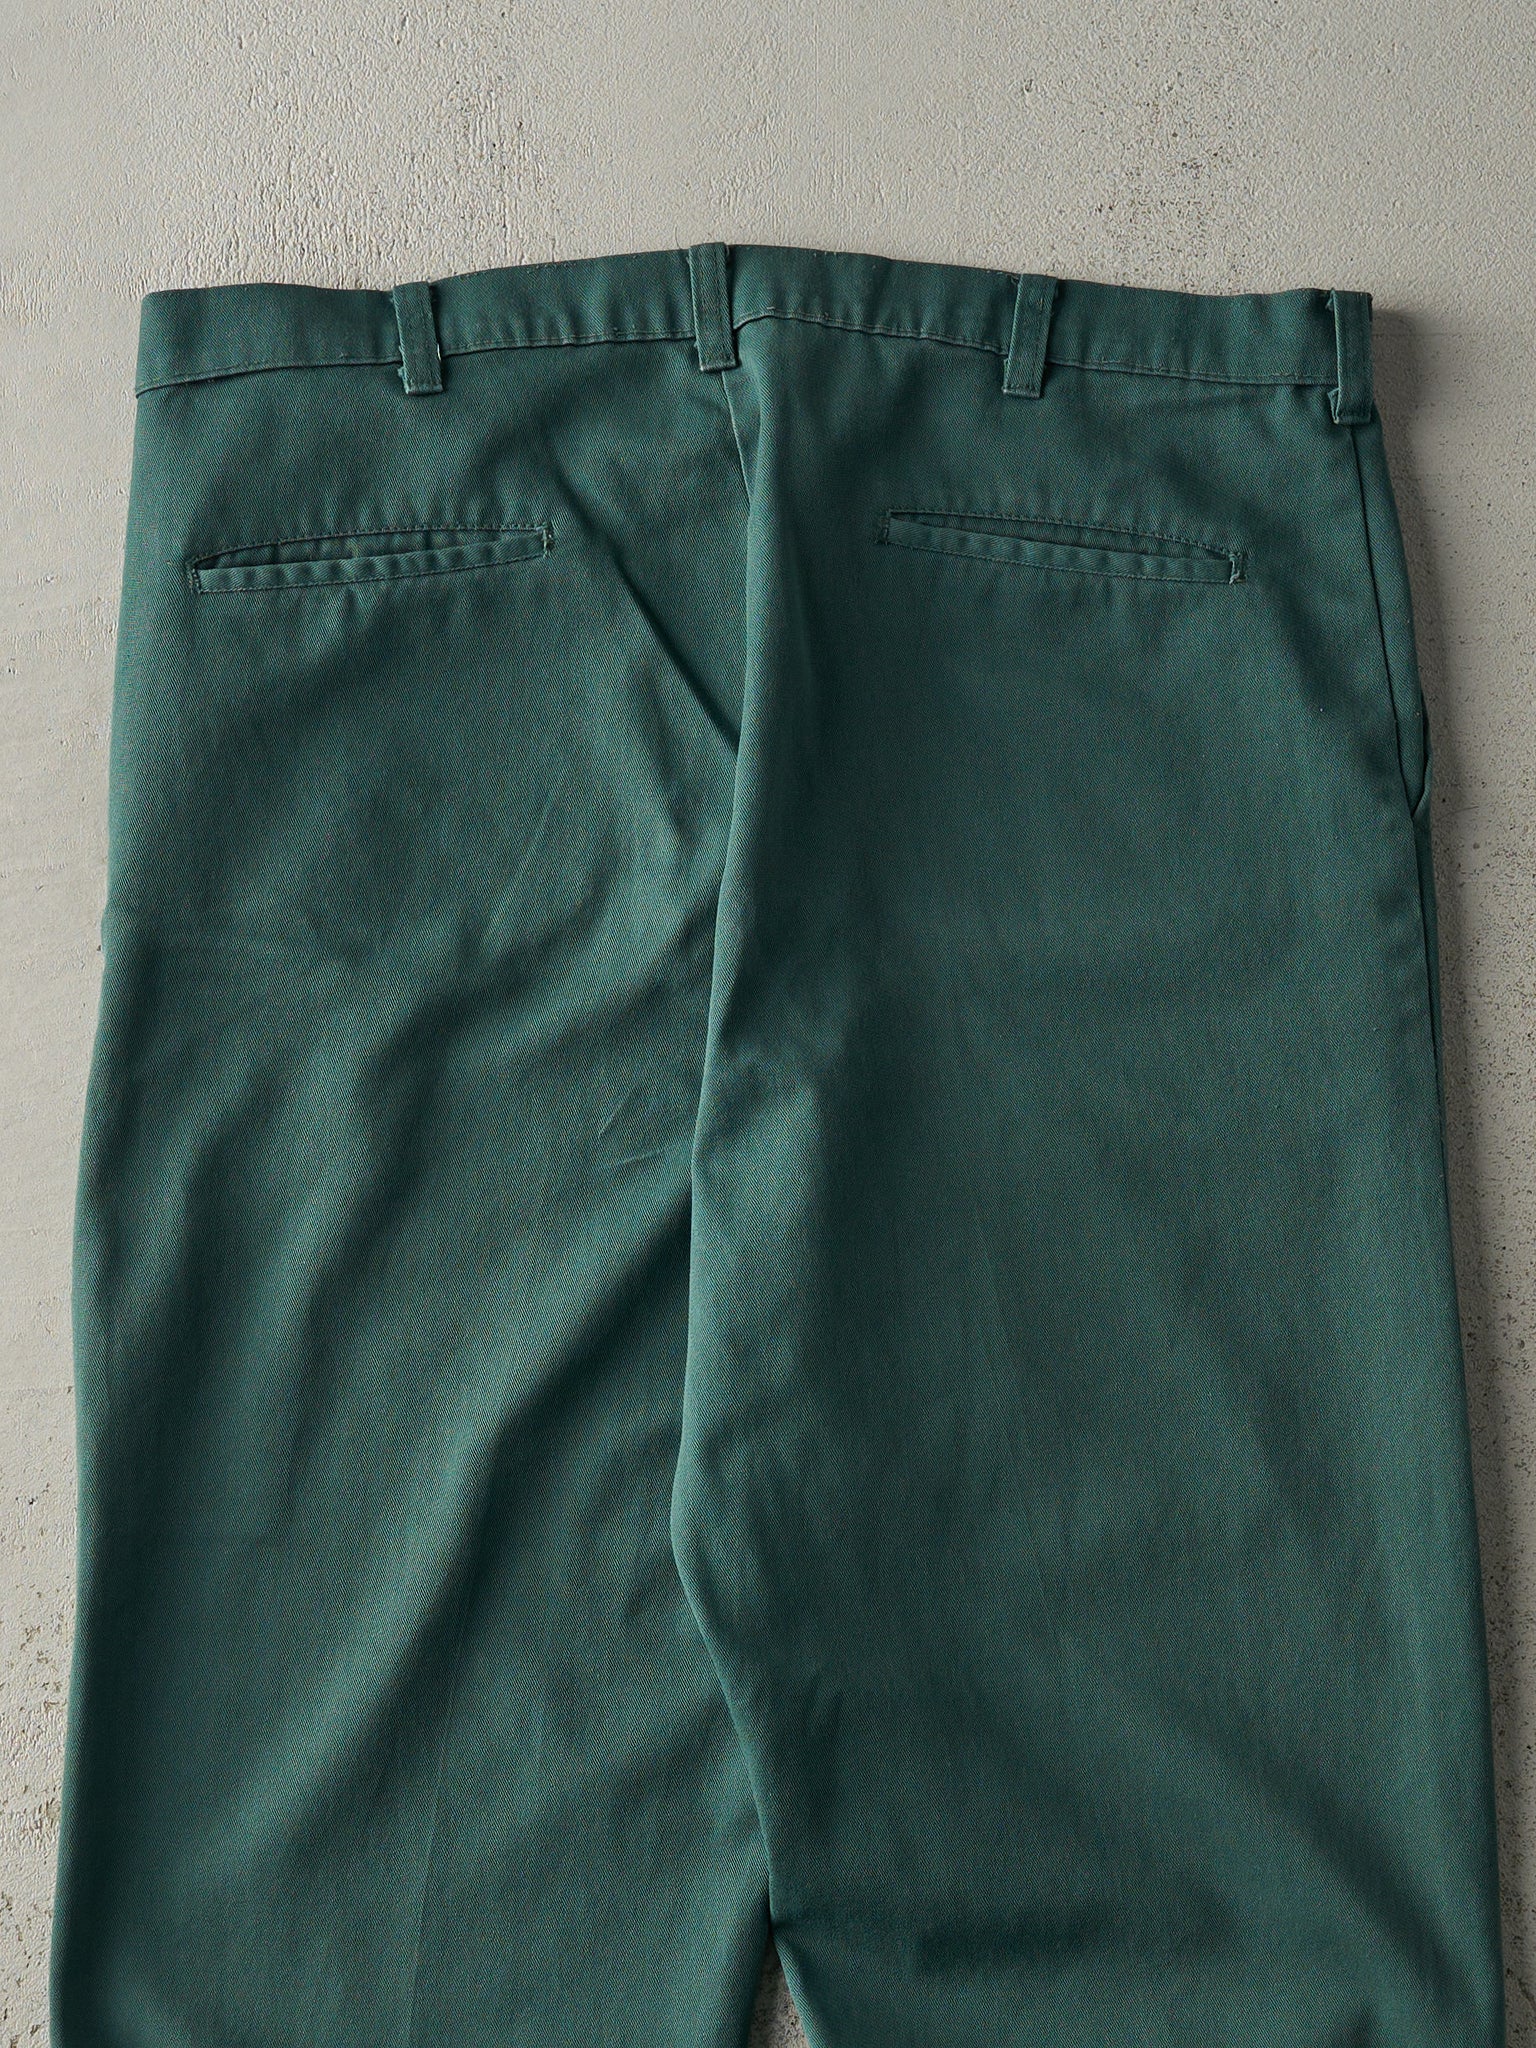 Vintage 90s Green Work Pants (37x27.5)